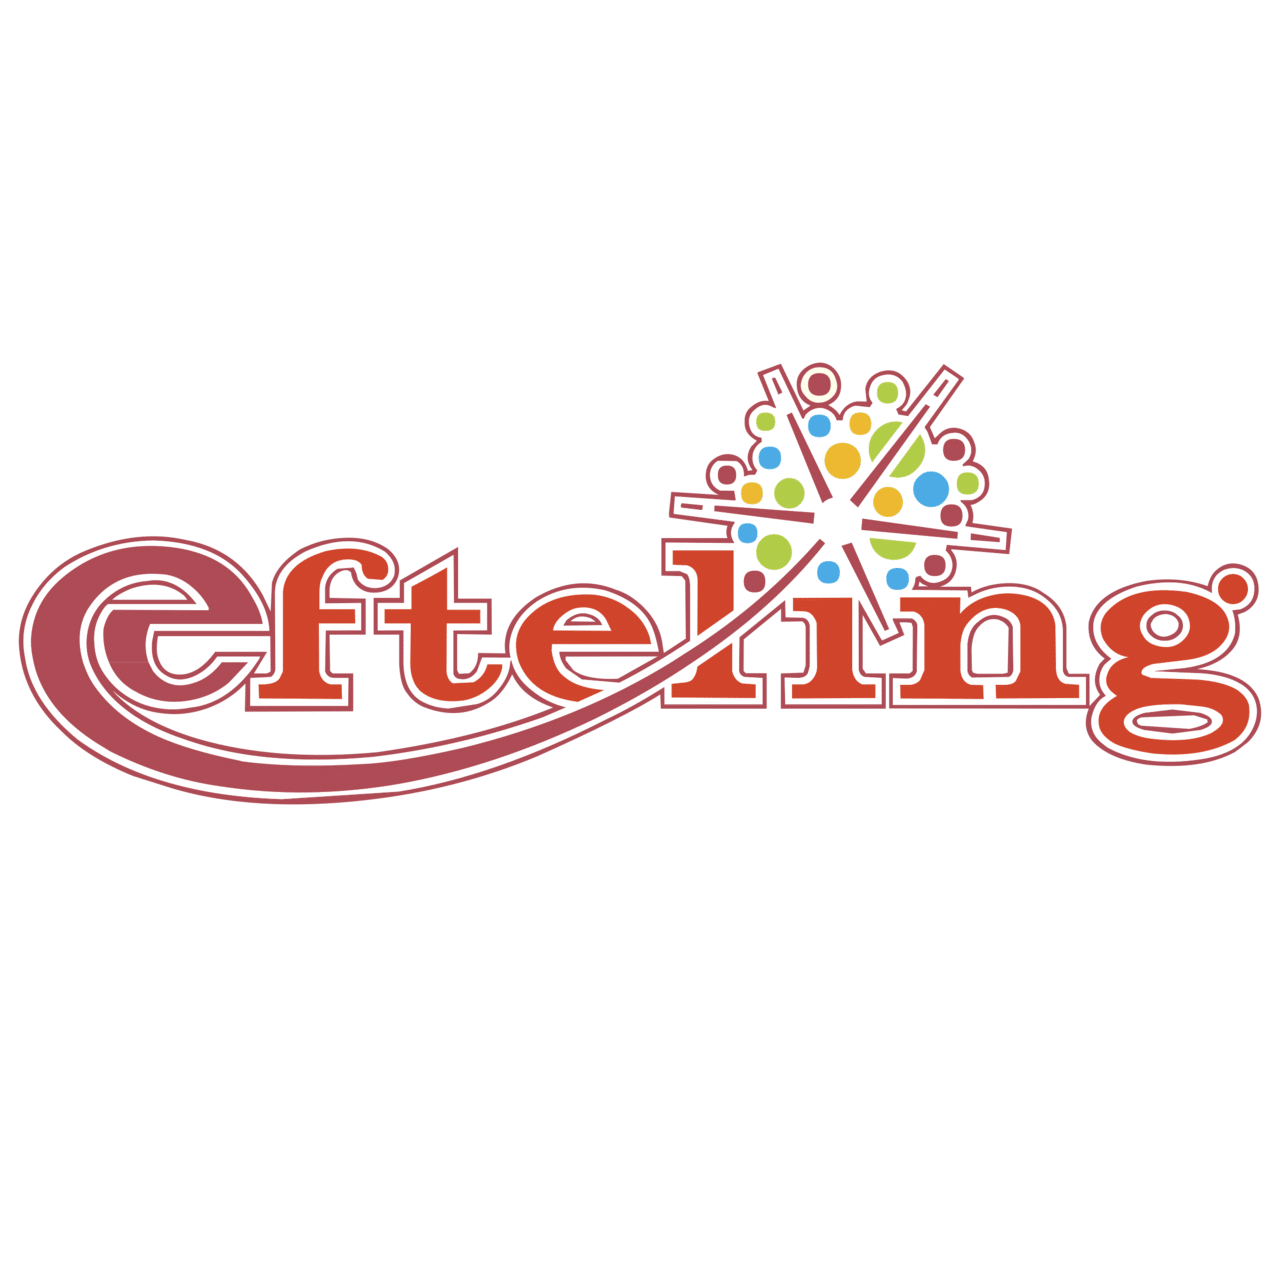 efteling-logo